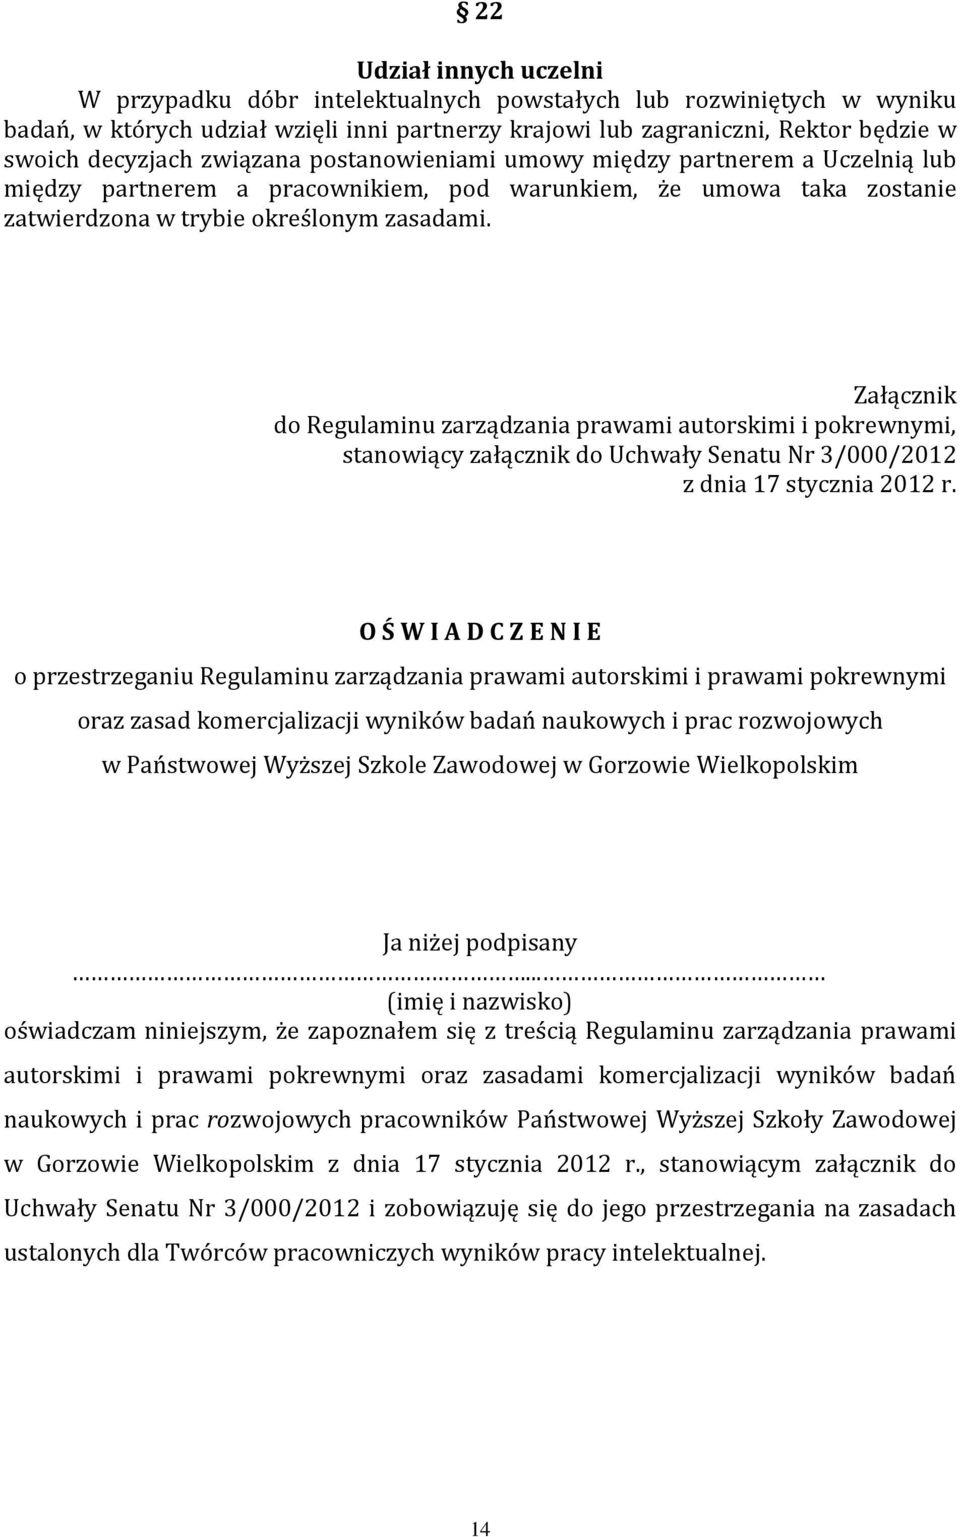 Załącznik do Regulaminu zarządzania prawami autorskimi i pokrewnymi, stanowiący załącznik do Uchwały Senatu Nr 3/000/2012 z dnia 17 stycznia 2012 r.